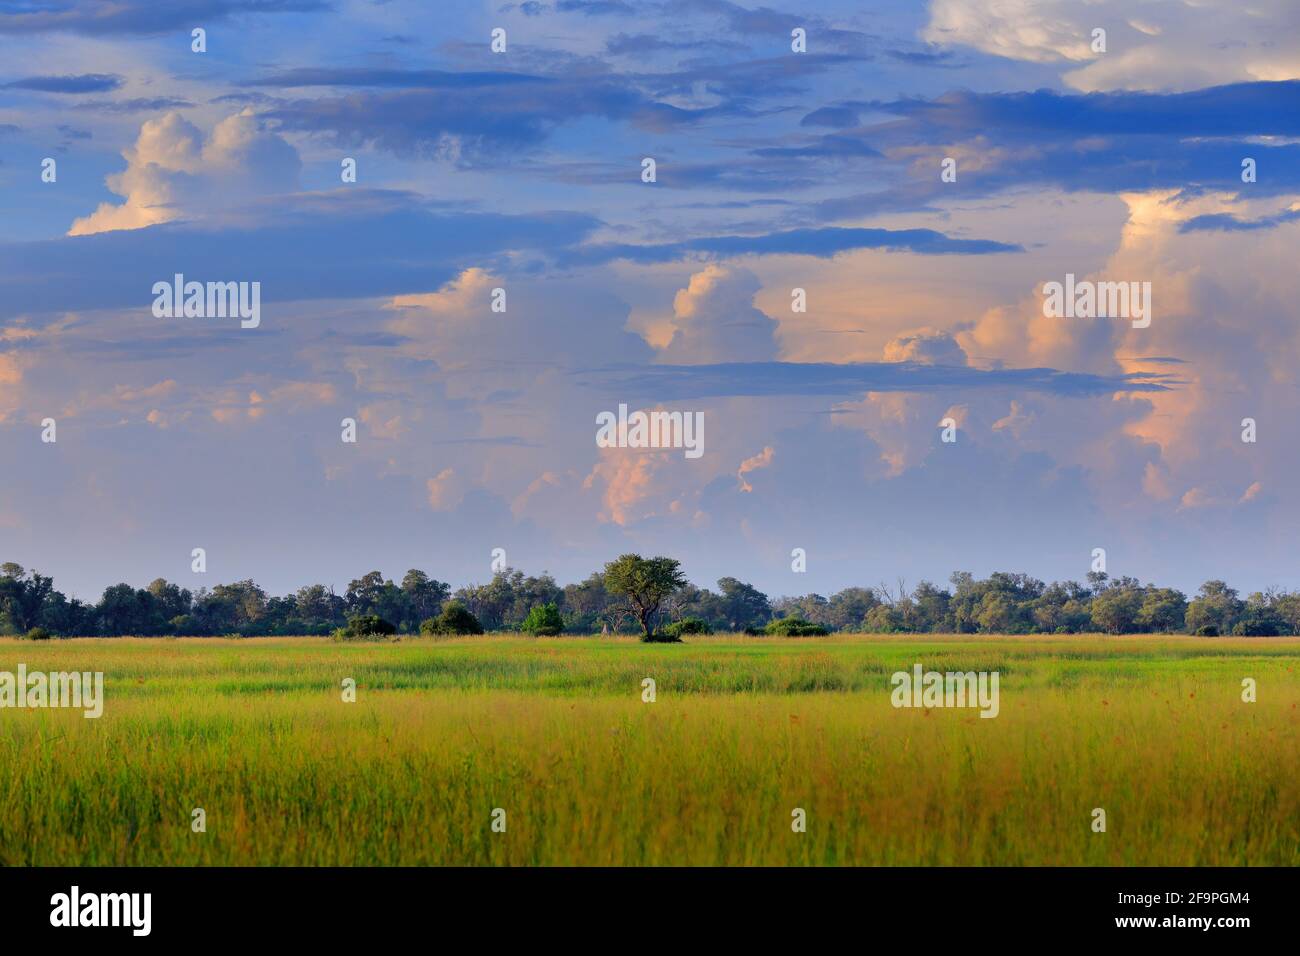 Wunderschöne weiße Wolken am blauen Himmel über der grünen Savanne in Afrika. Regenzeit in Moremi, Okavango Delta, Botswana. Afrikanischer Sommer Stockfoto